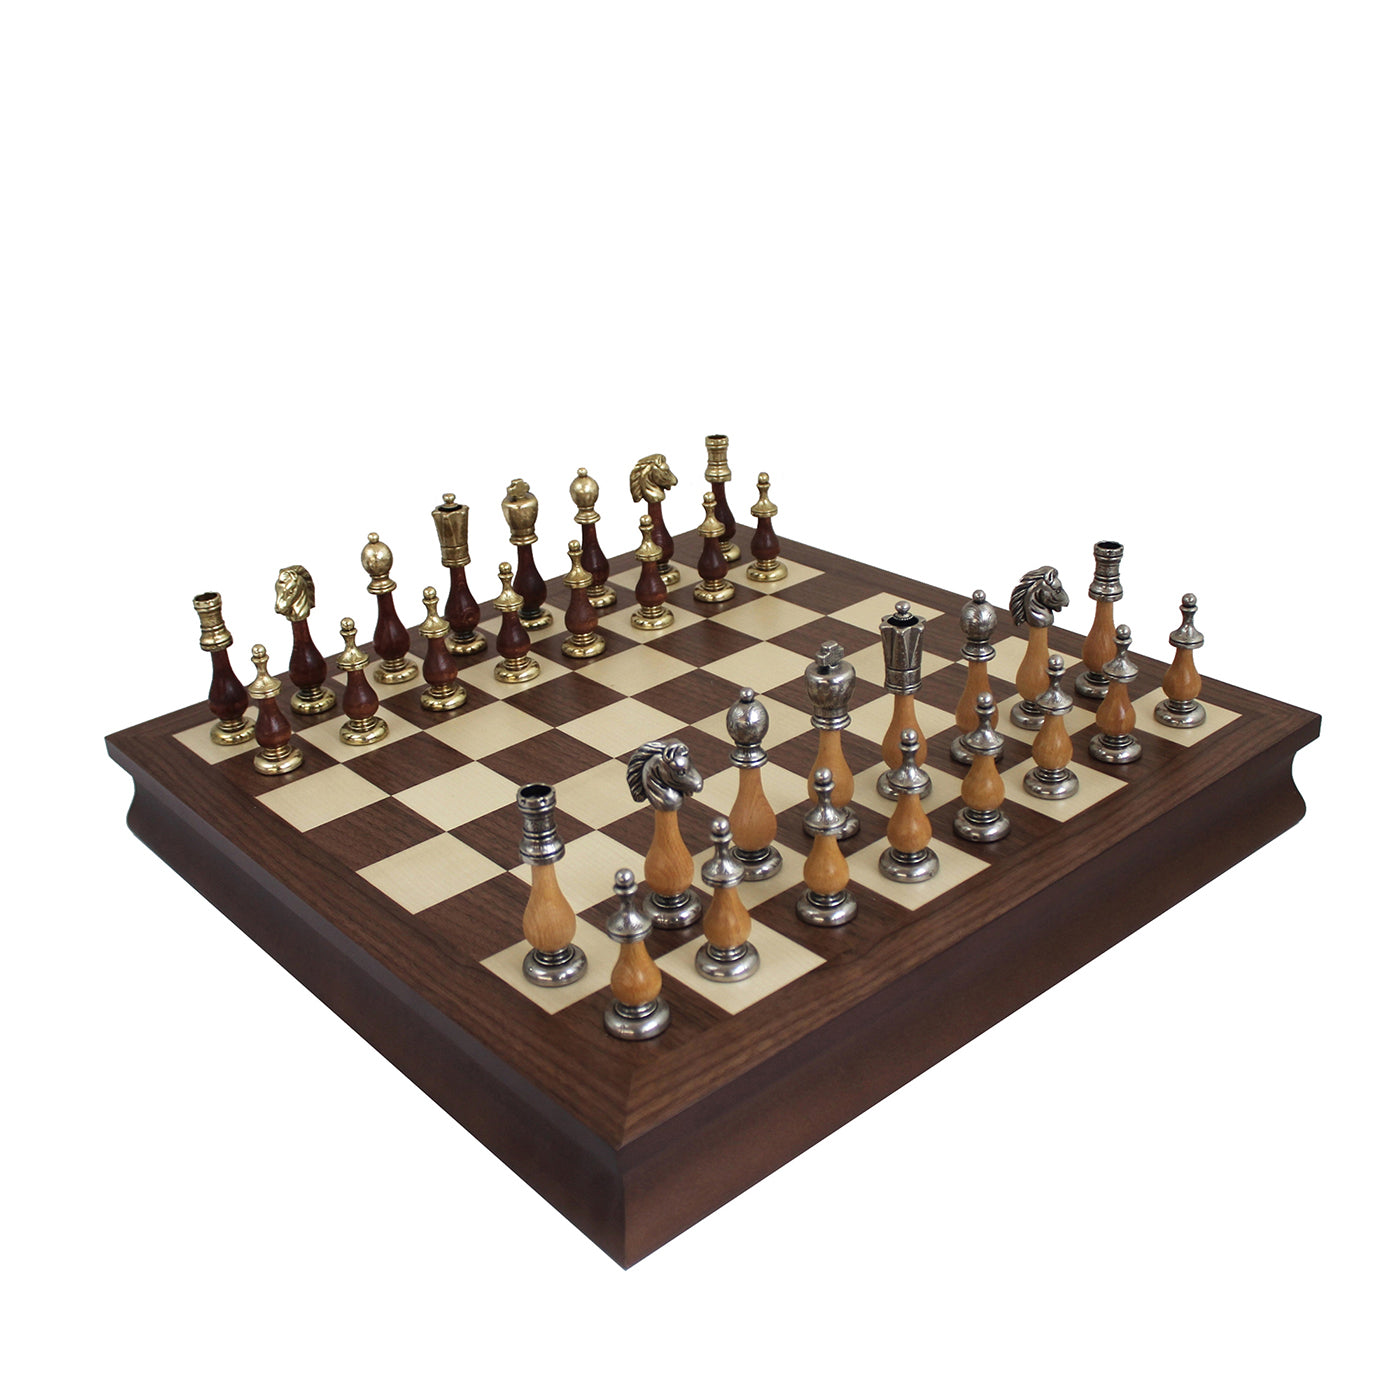 Juego de ajedrez tradicional - Vista principal